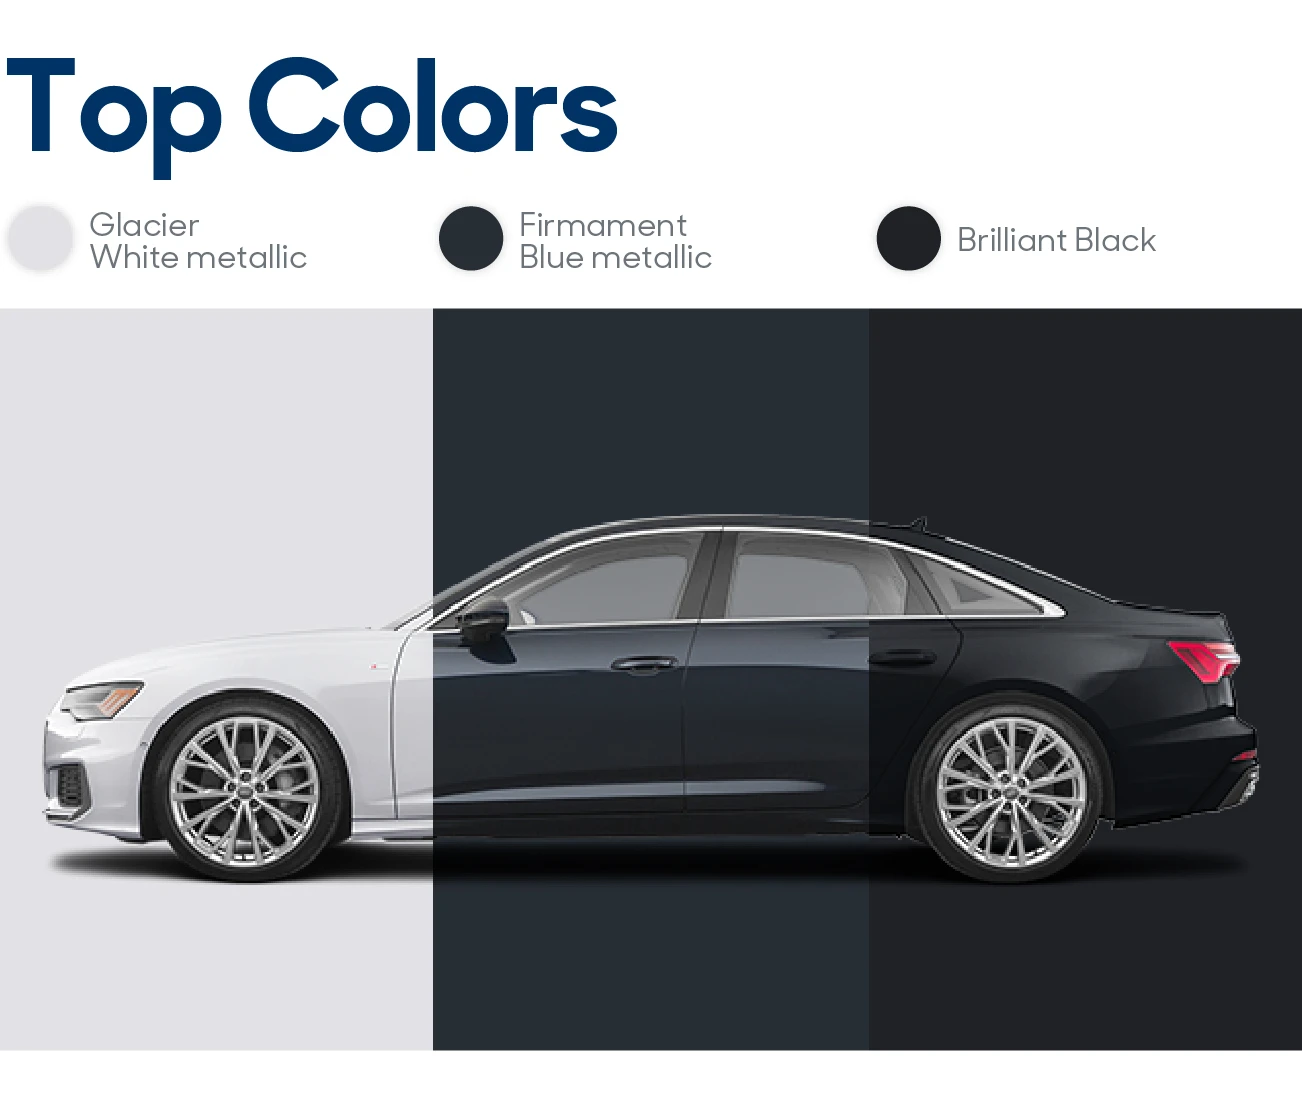 2020 Audi A6 Review: Top Colors | CarMax